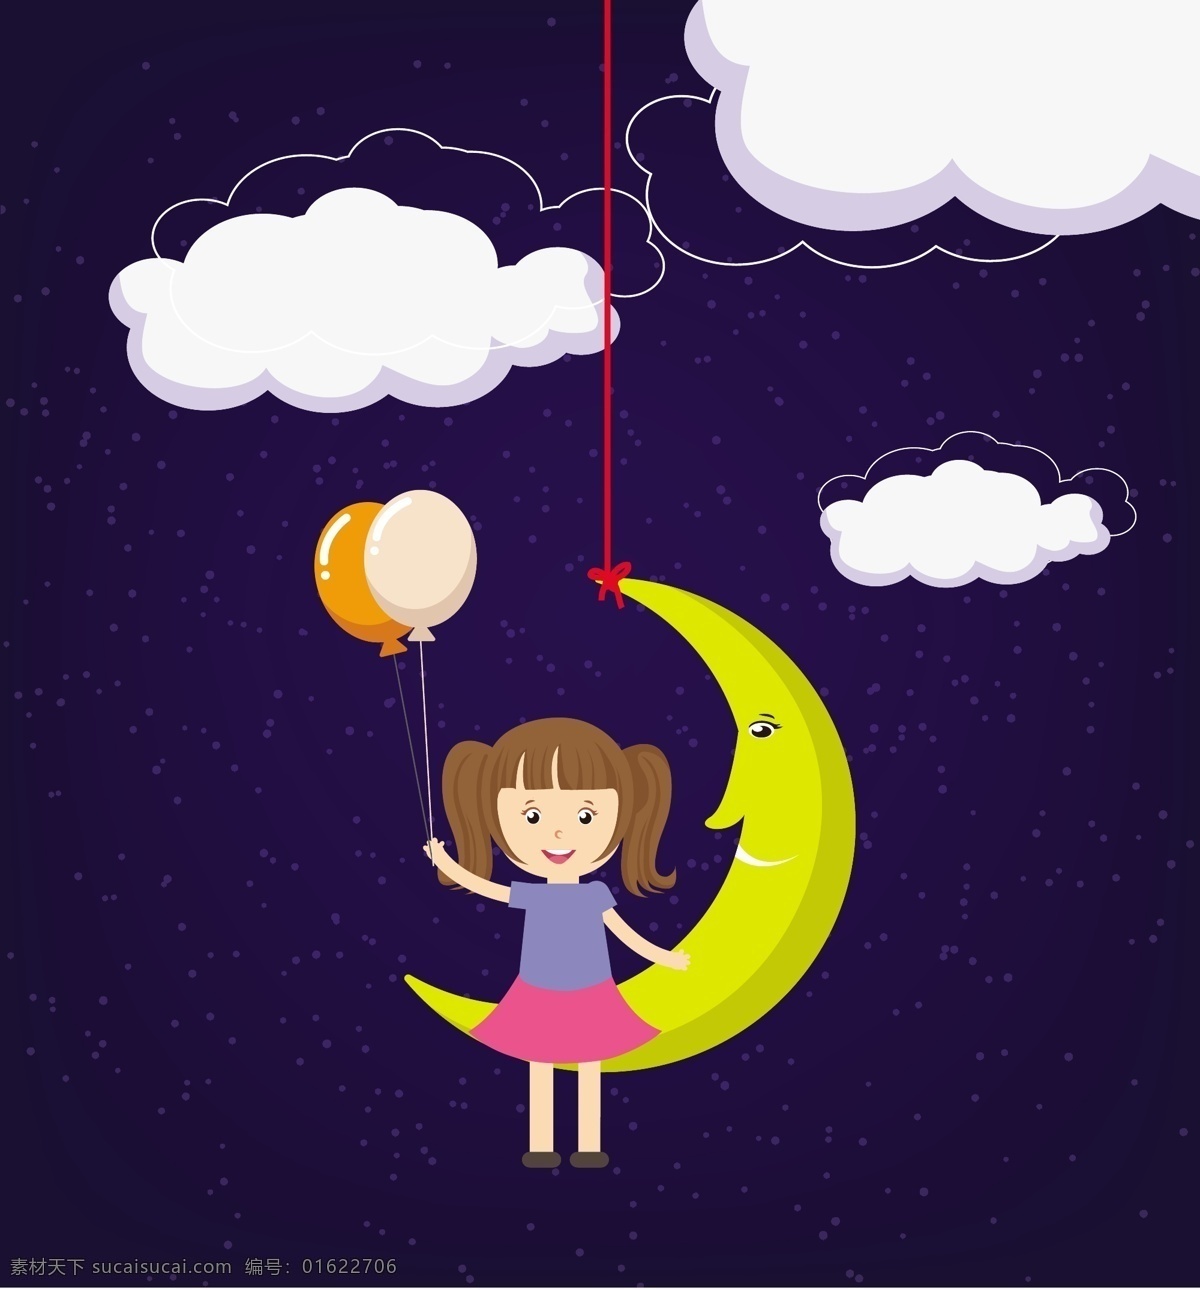 可爱 儿童 星空 插画 标志 小孩 月亮 气球 云朵 矢量素材 矢量插画